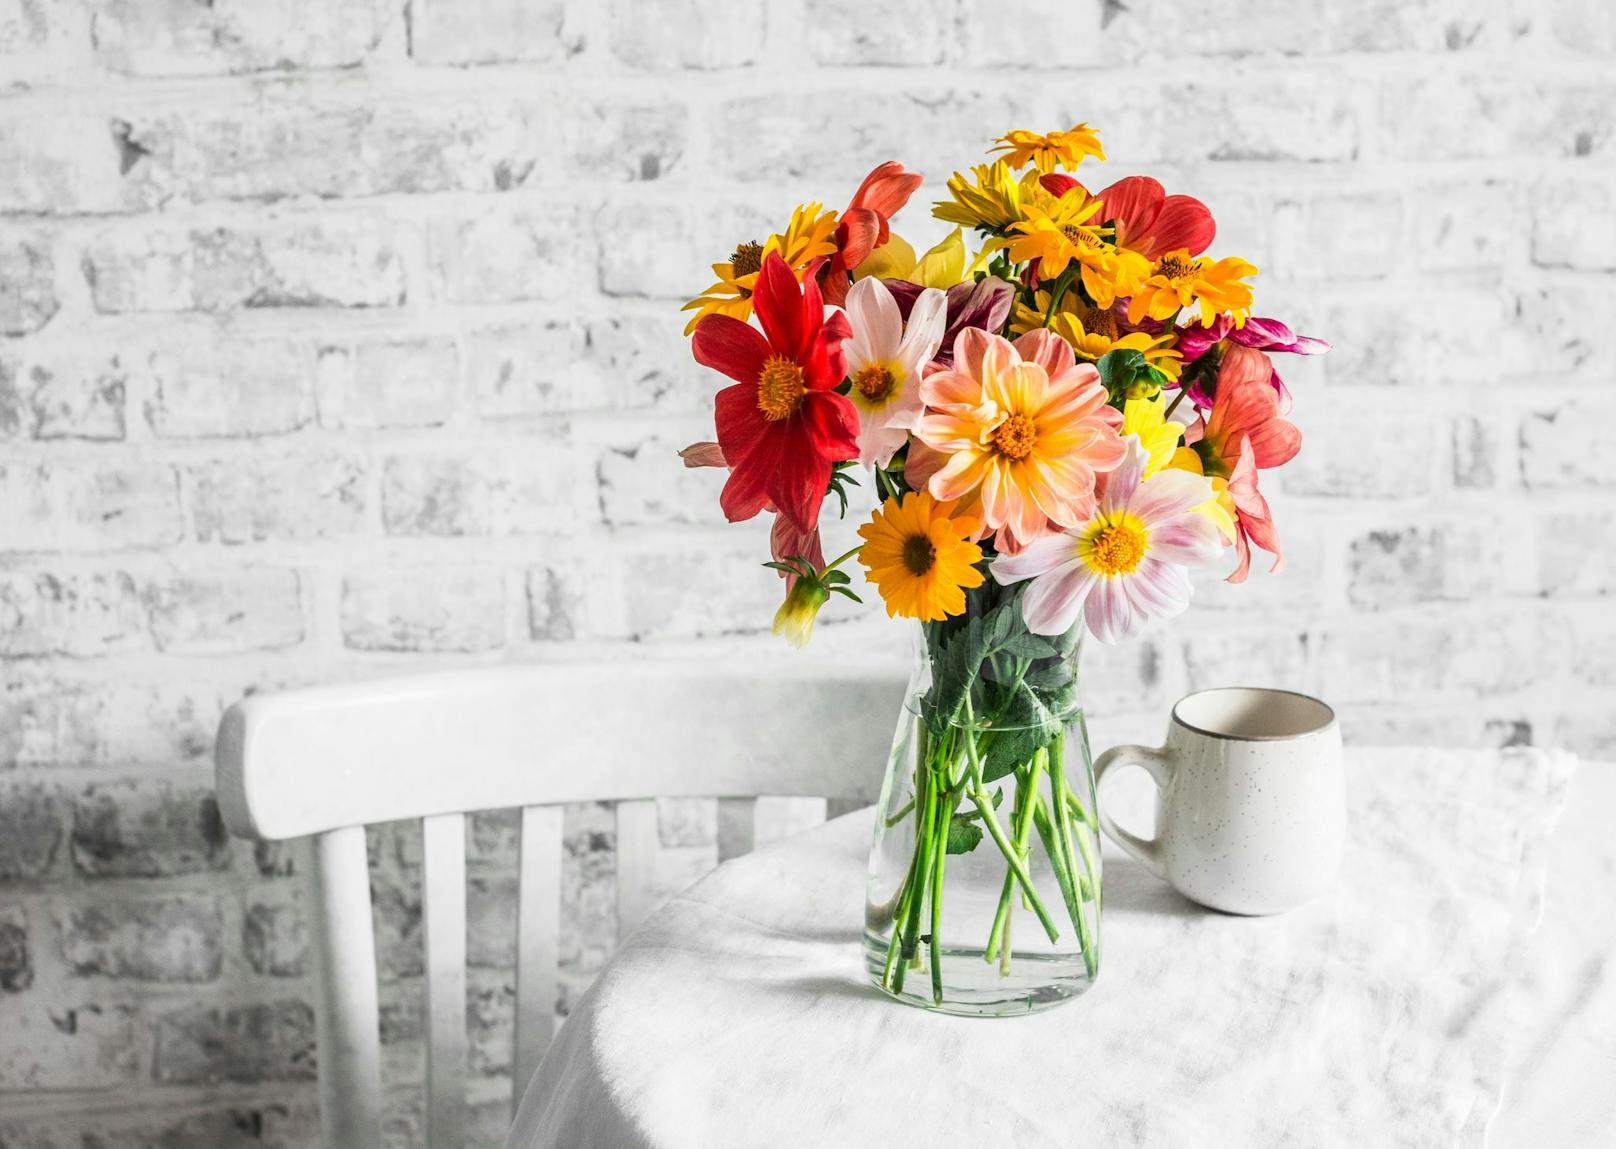 Achten Sie darauf, dass Ihre Vase sauber ist und wechseln Sie das Wasser regelmäßig, damit Ihre Blumen lange frisch bleiben.